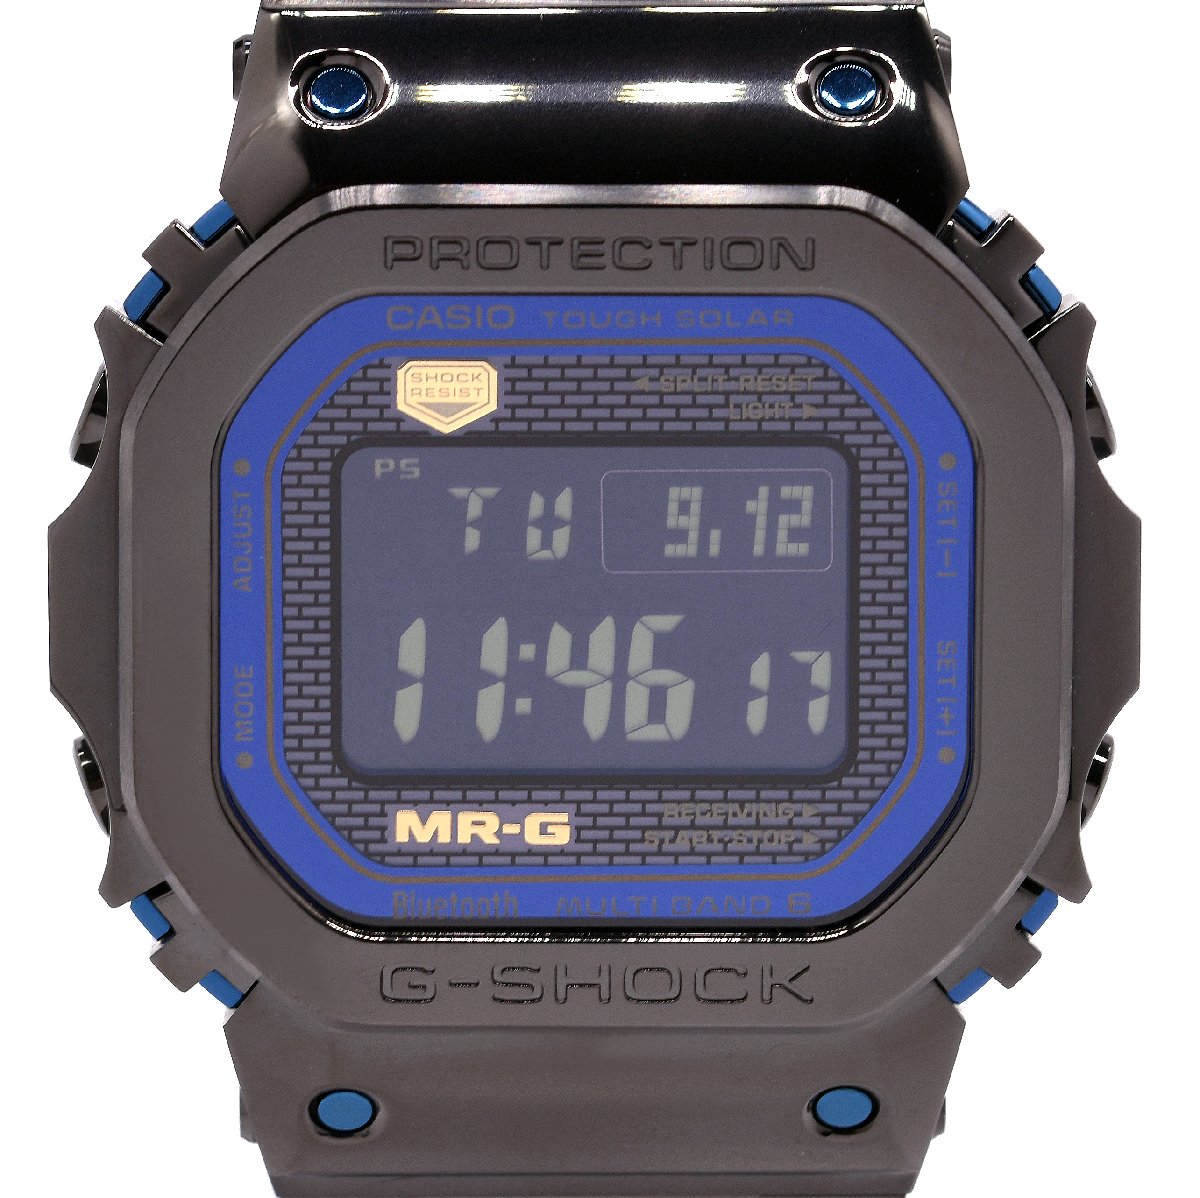 価格帯[40万円台] カシオ(CASIO)の腕時計 販売情報一覧 - 腕時計投資.com